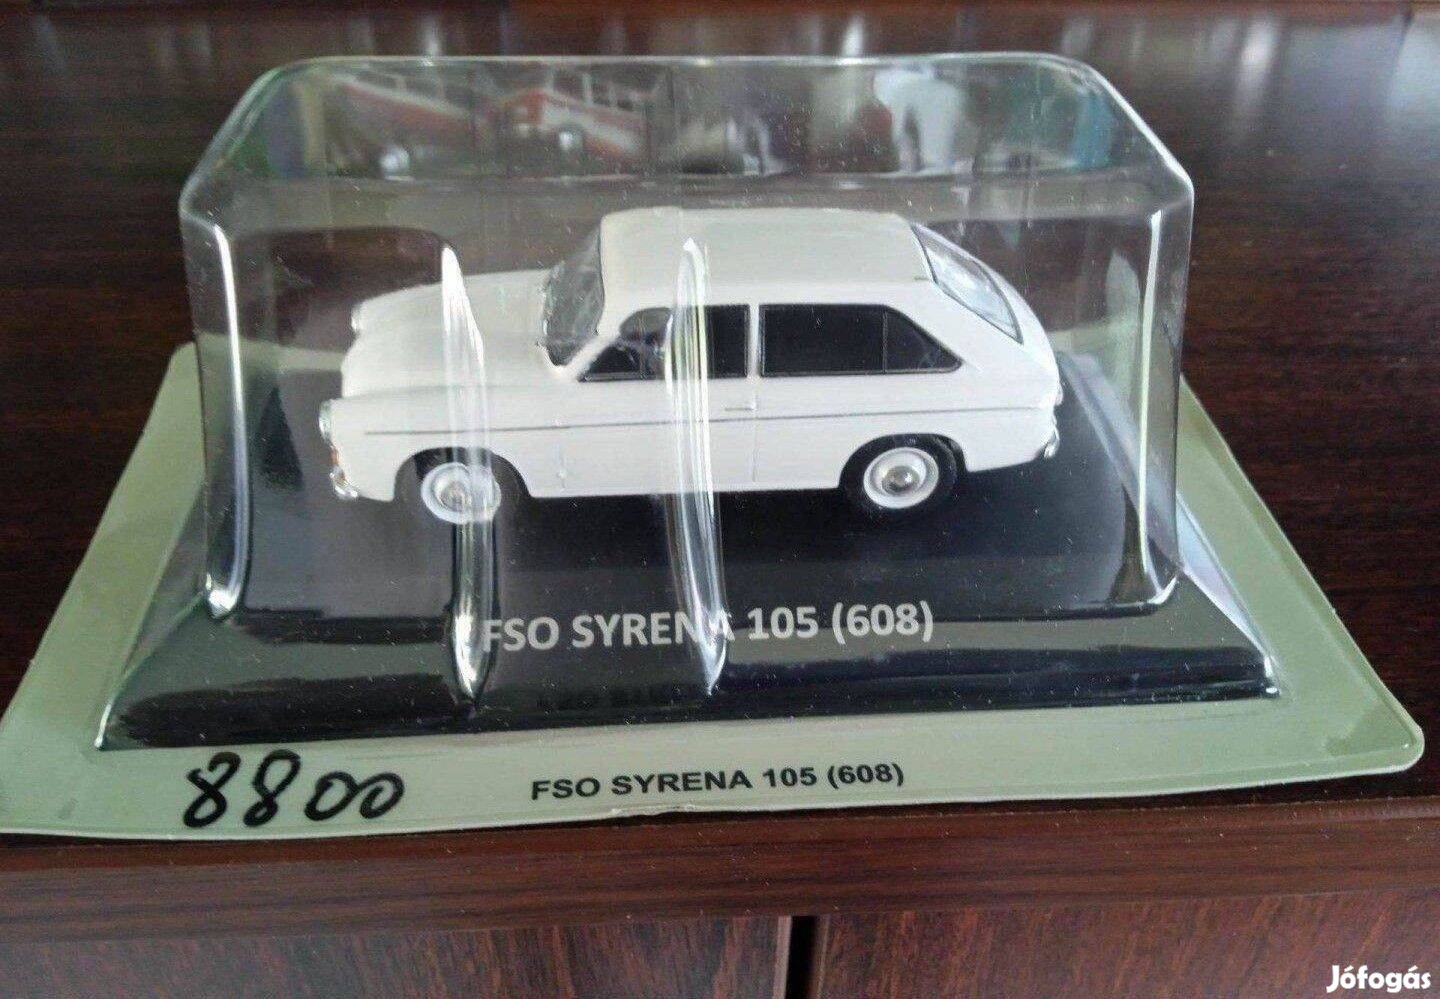 Syrena 105 (608) kisauto modell 1/43 Eladó